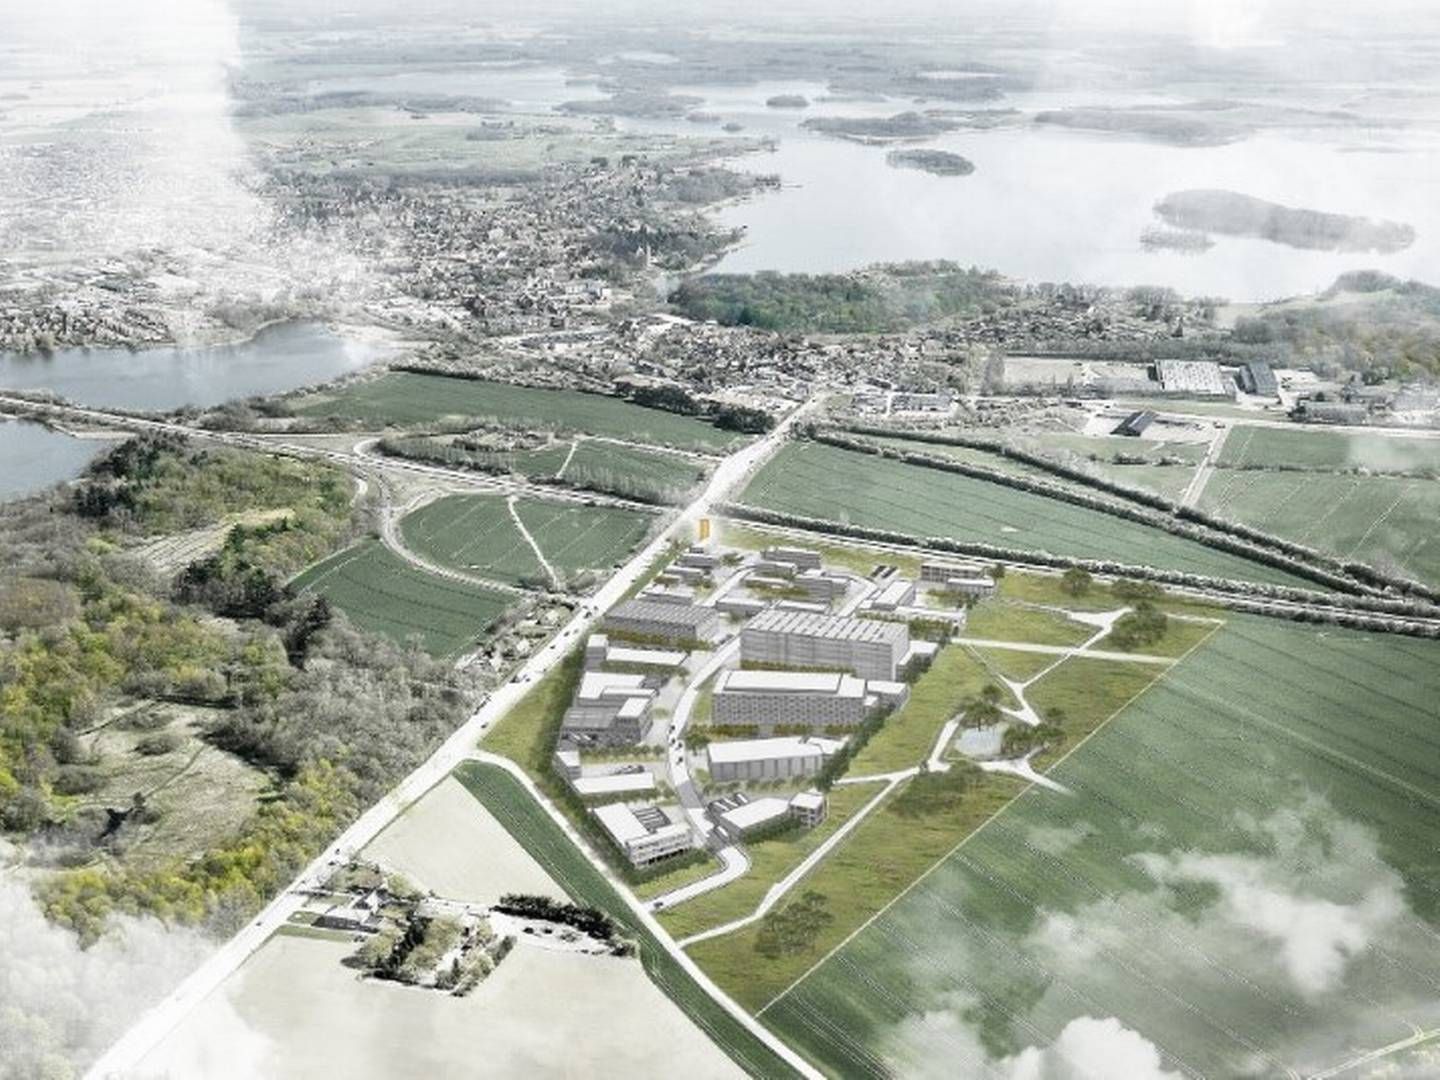 Erhvervsparken Hub 48 Maribo tæt på Sydmotorvejen, som med Femern-forbindelsens åbning i 2029 vil blive en vigtig transportrute mellem Skandinavien og Europa. | Foto: PR / Business Lolland-Falster